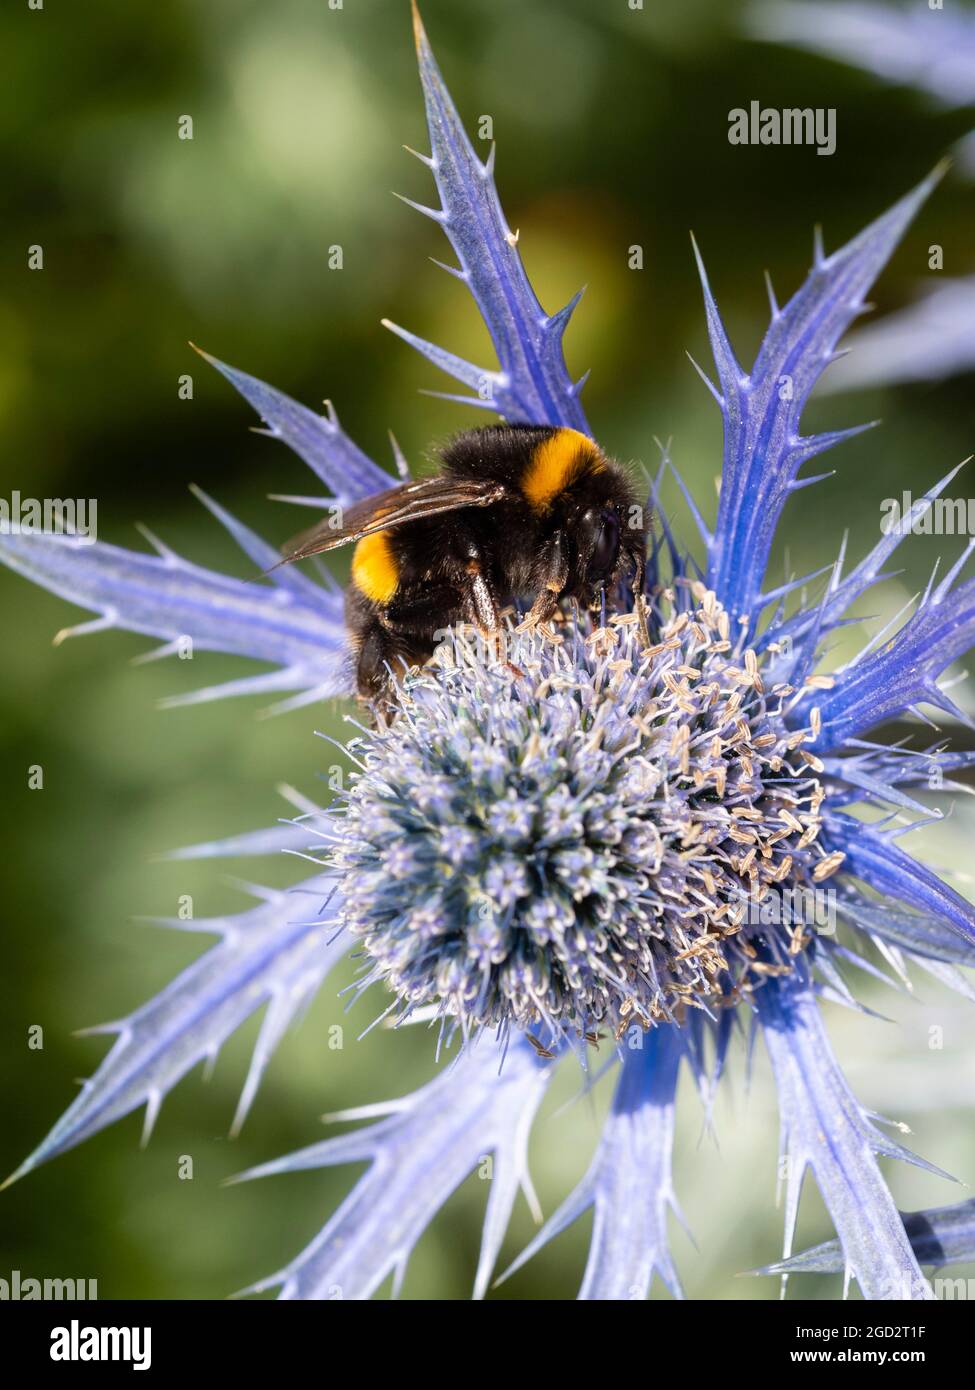 Bombus terrestris, un ouvrier de l'abeille à queue de bumble, se nourrissant sur le jardin vivace Eryngium x zabelii 'Big Blue' dans un jardin de Plymouth, au Royaume-Uni Banque D'Images